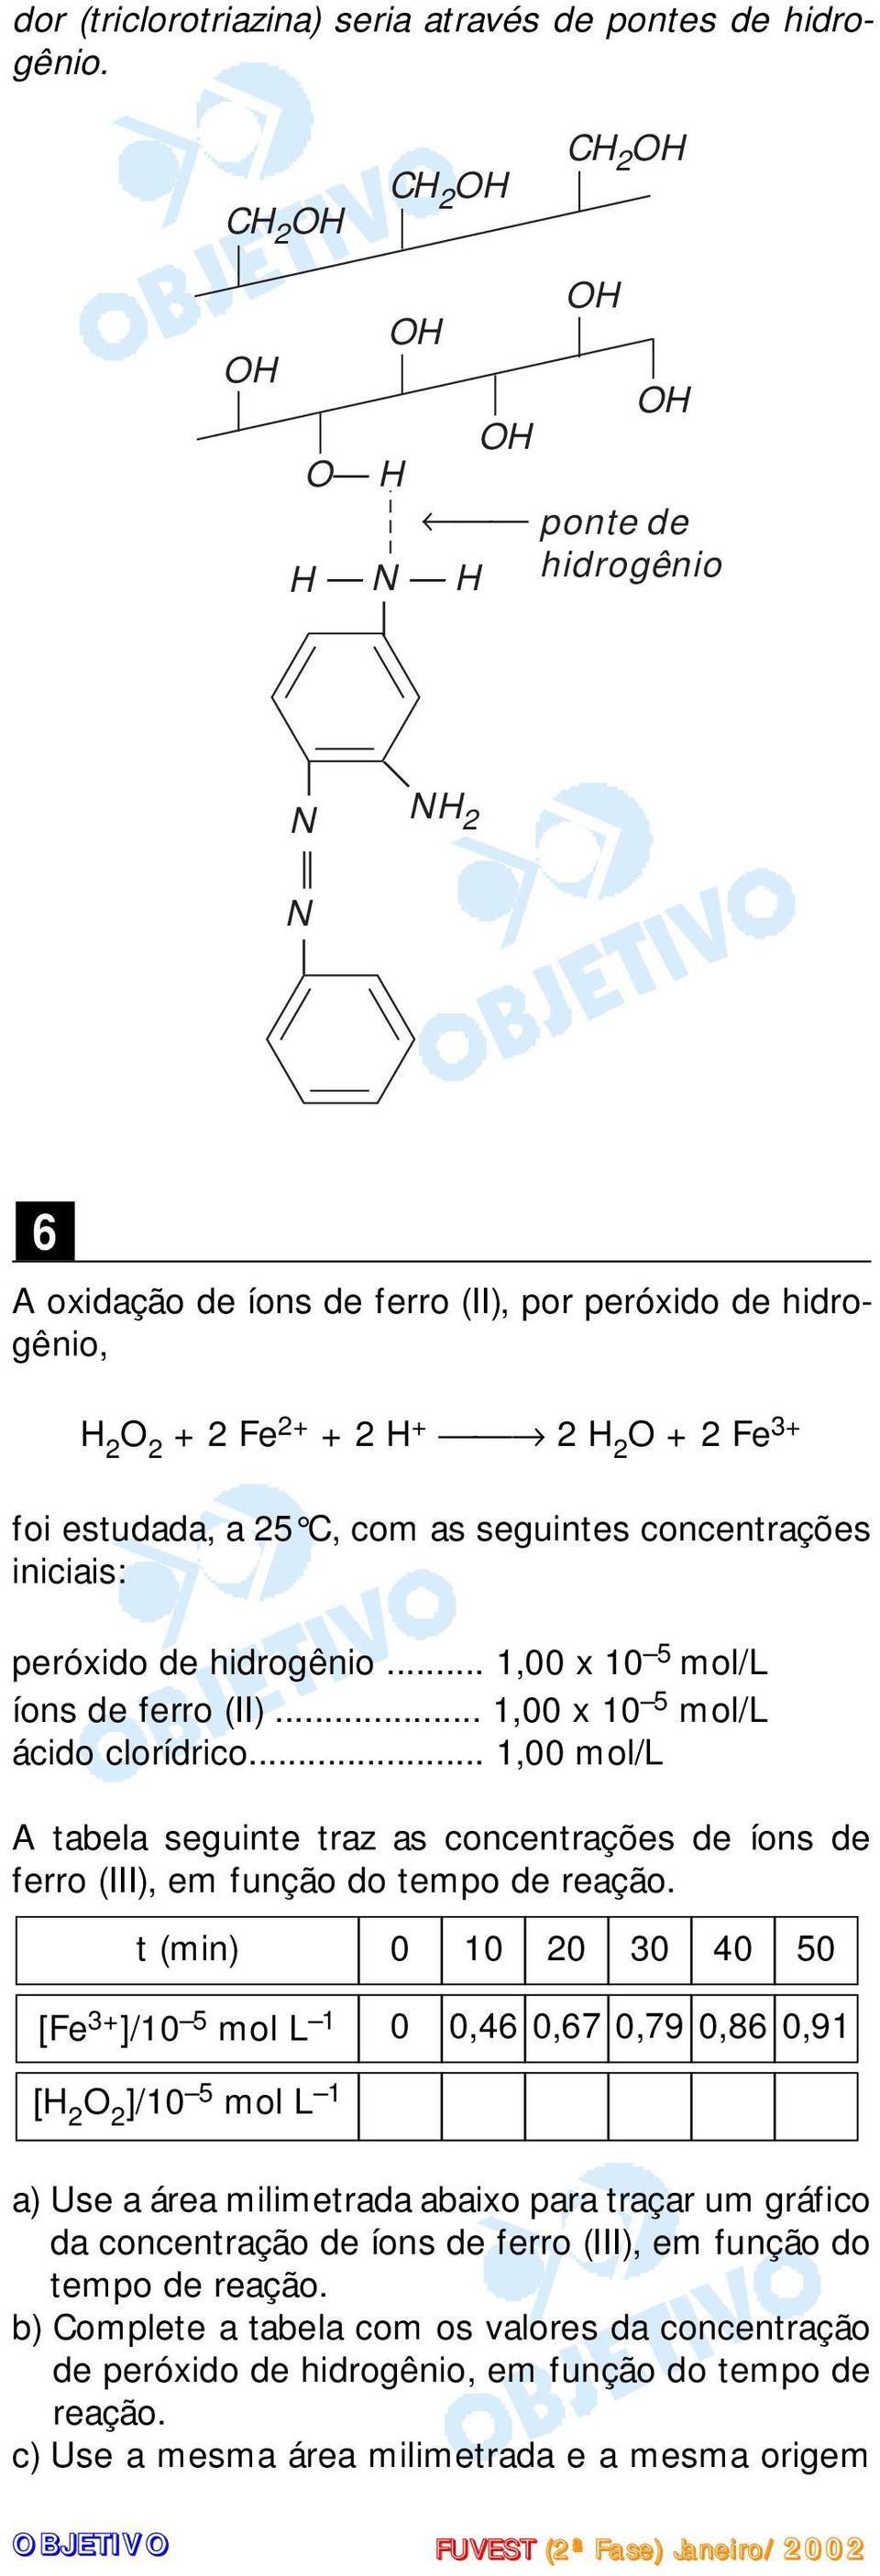 hidrogênio... 1,00 x 10 5 mol/l íons de ferro (II)... 1,00 x 10 5 mol/l ácido clorídrico... 1,00 mol/l A tabela seguinte traz as concentrações de íons de ferro (III), em função do tempo de reação.